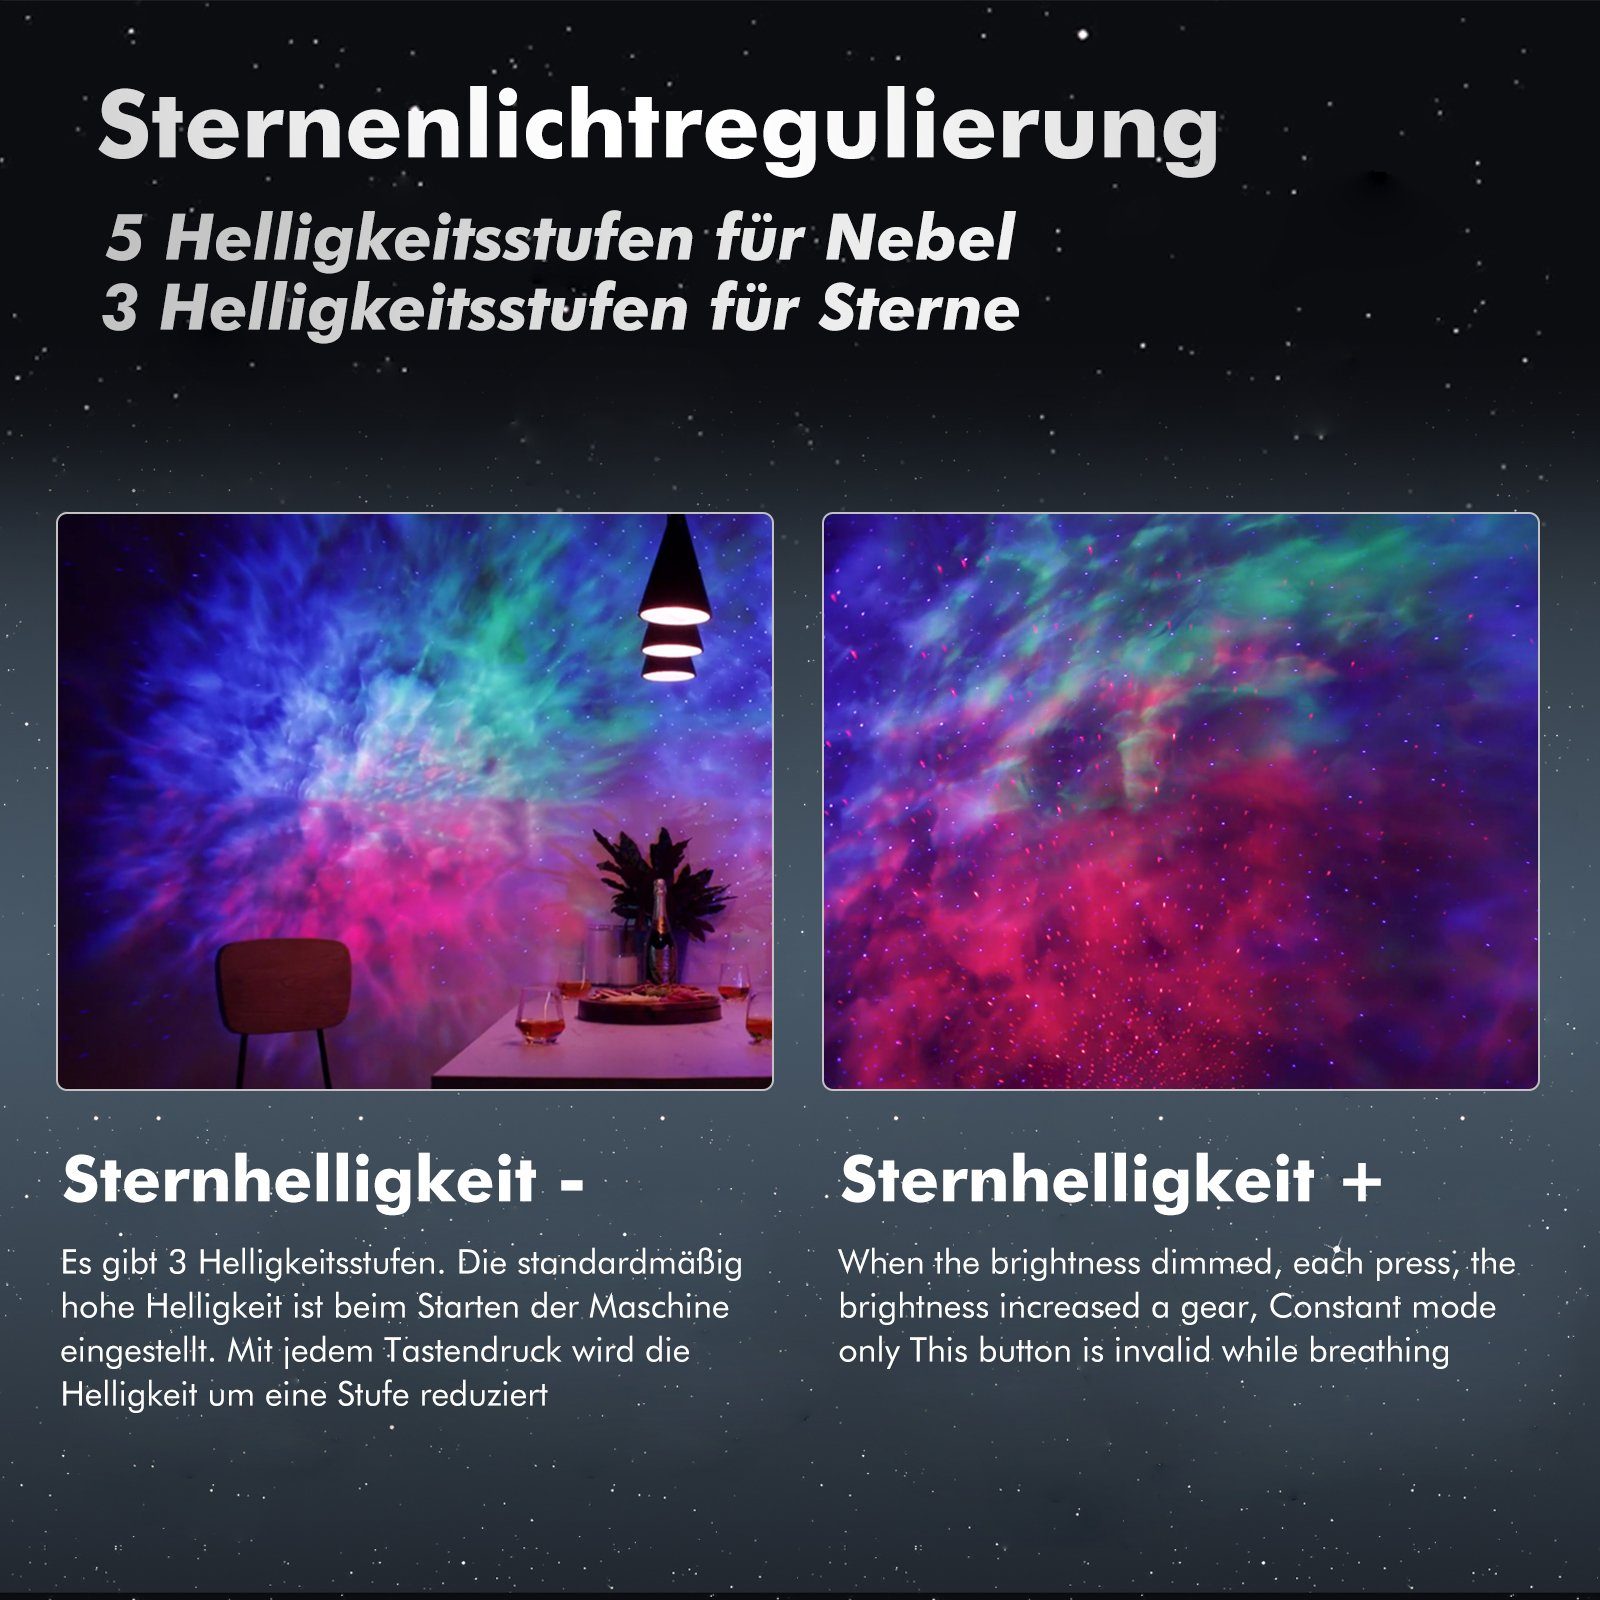 LED LED-Sternenhimmel Sternenhimmel Projektor Lampe, Galaxy JOYOLEDER Sprachdialogsystem, Projector,Alien